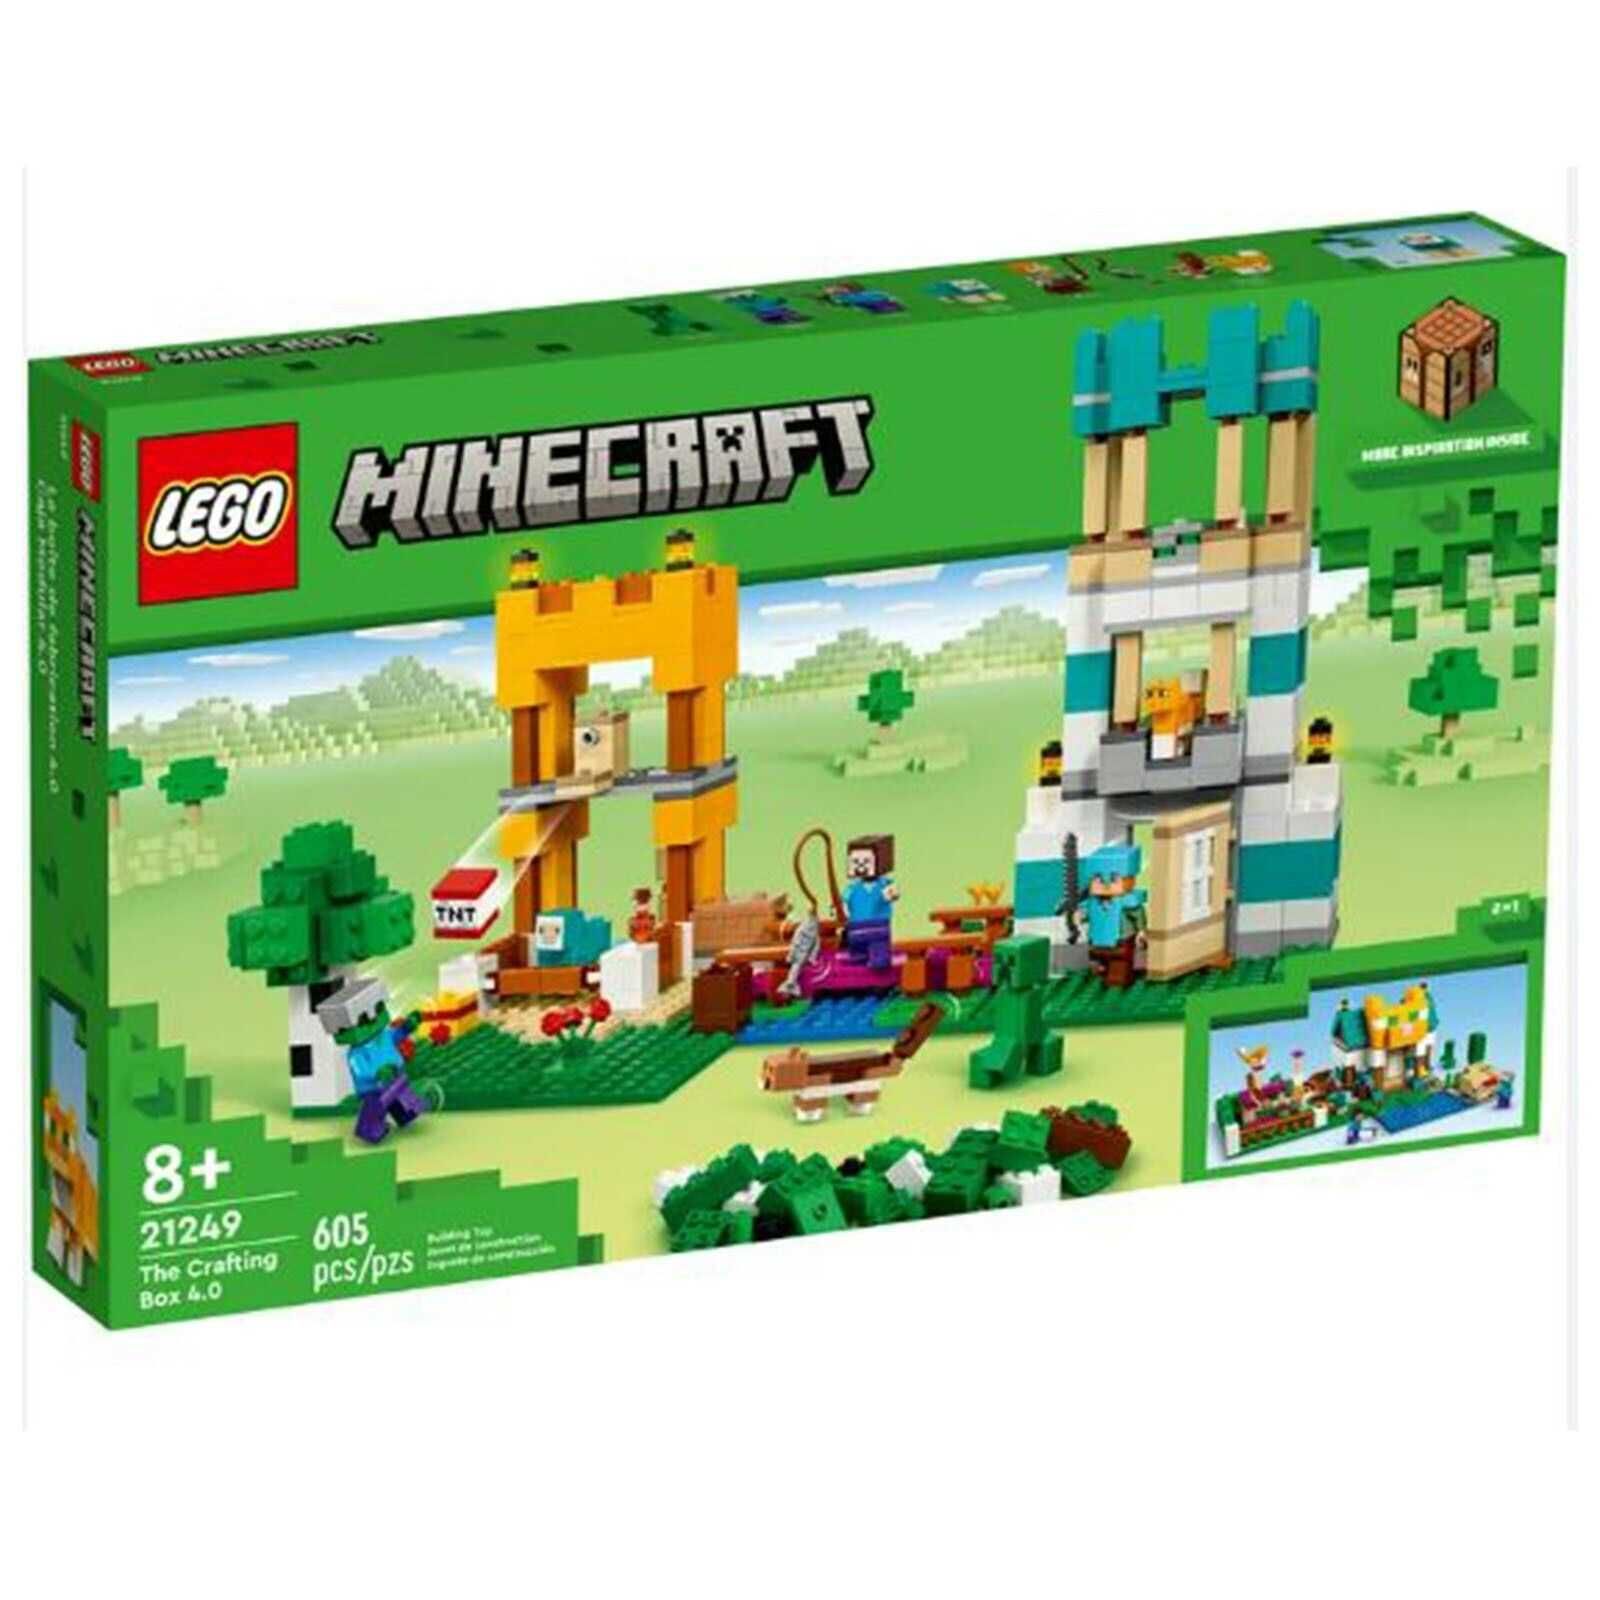 Конструктор Lego Minecraft  21249, 21244 lego